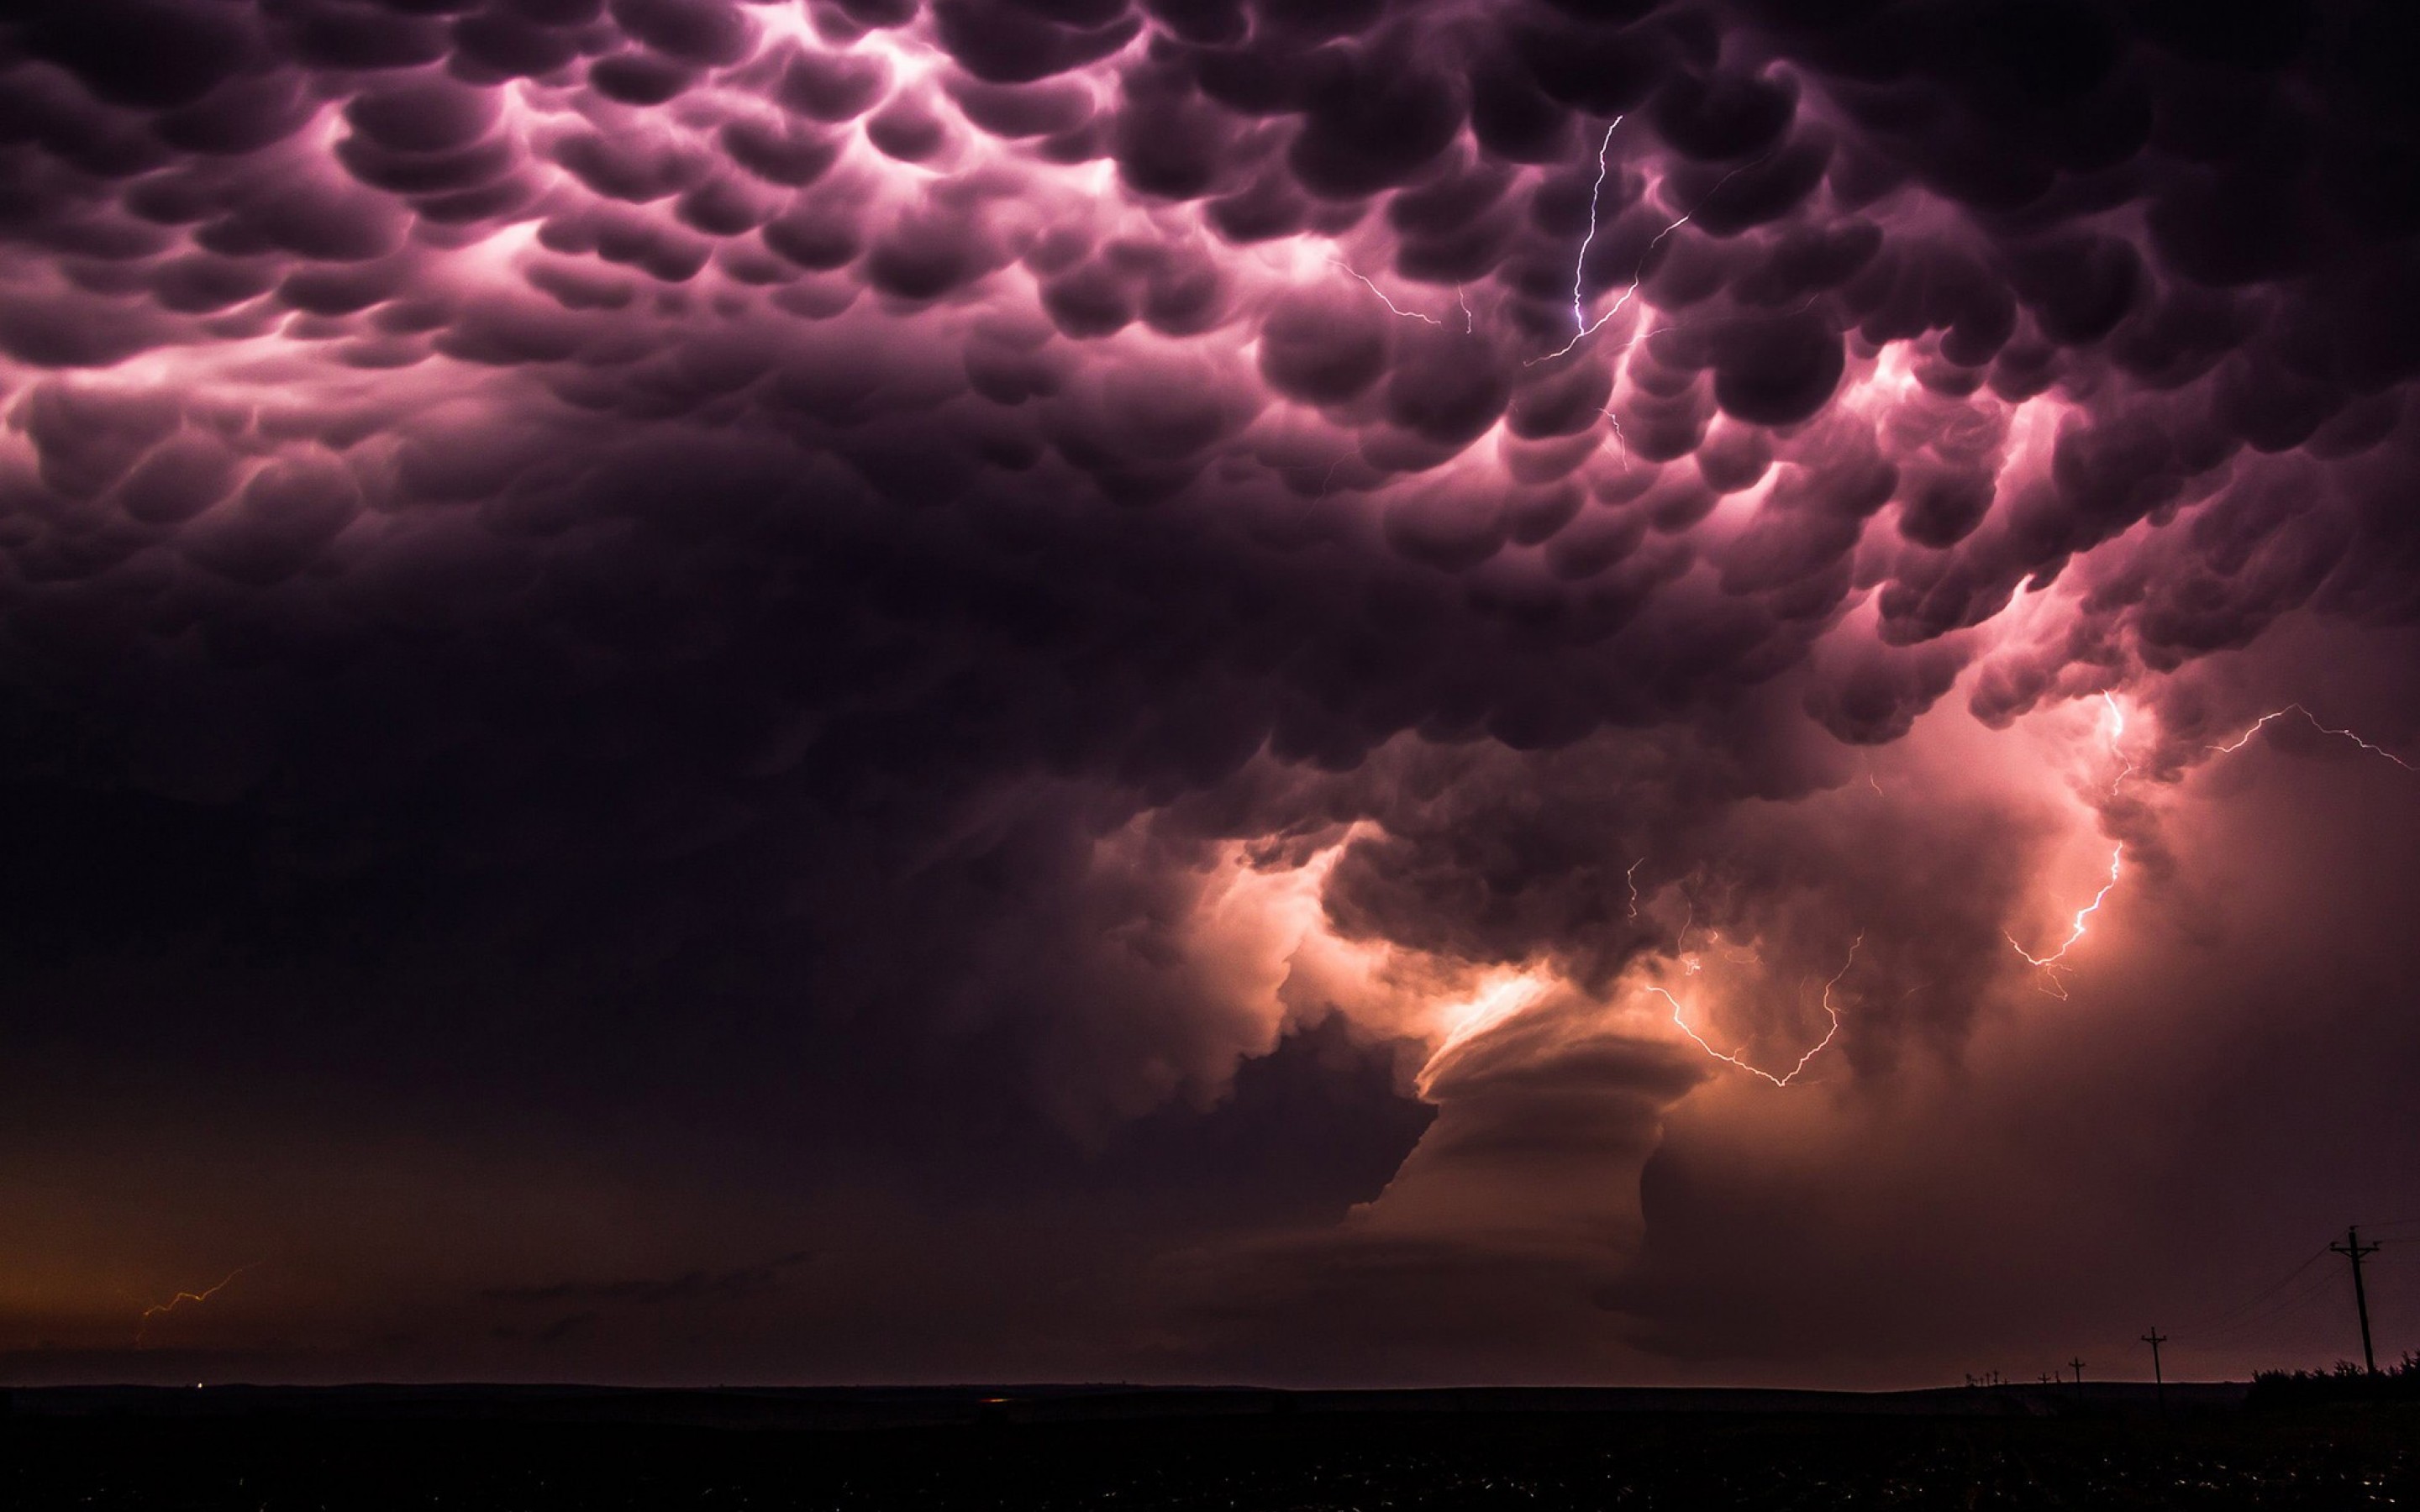 Самое темное облако. Торнадо Небраска США шторм тучи молнии. Многоячейковые кластерные грозы. Вымеобразные облака (Mammatus cloud). Вымеобразные трубчатые облака.